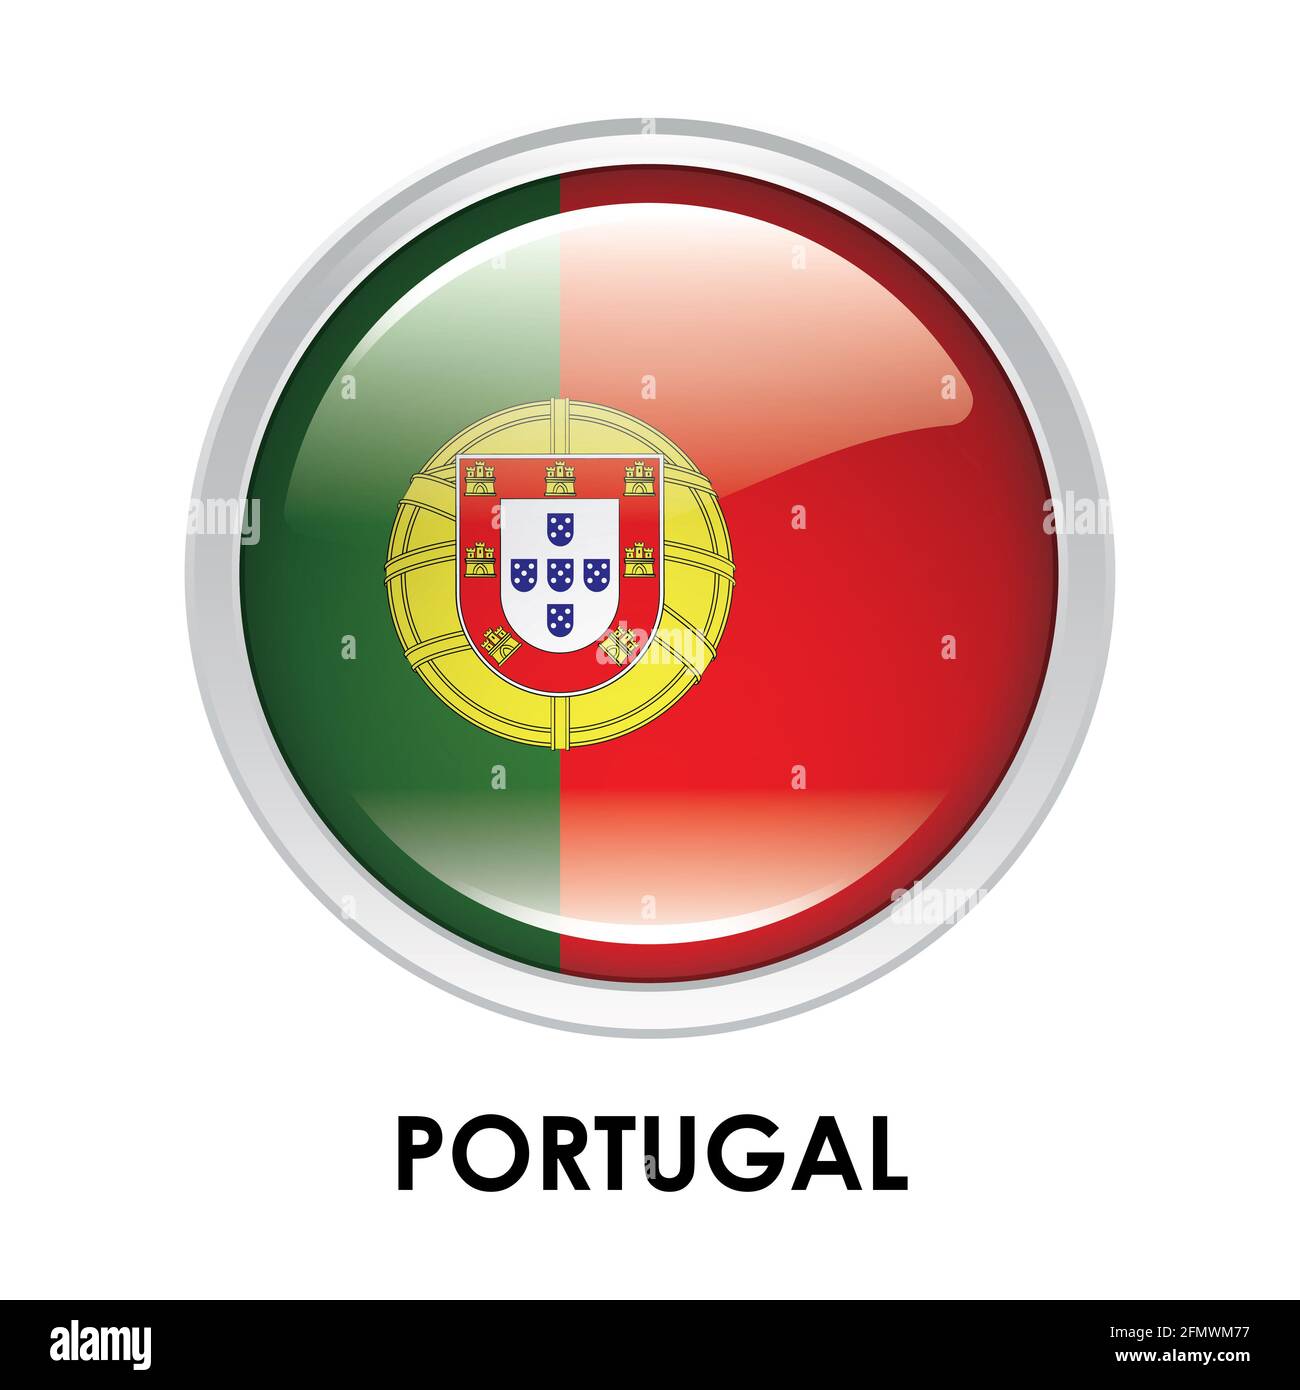 1,625 Regiões Administrativas Portugal Images, Stock Photos, 3D objects, &  Vectors